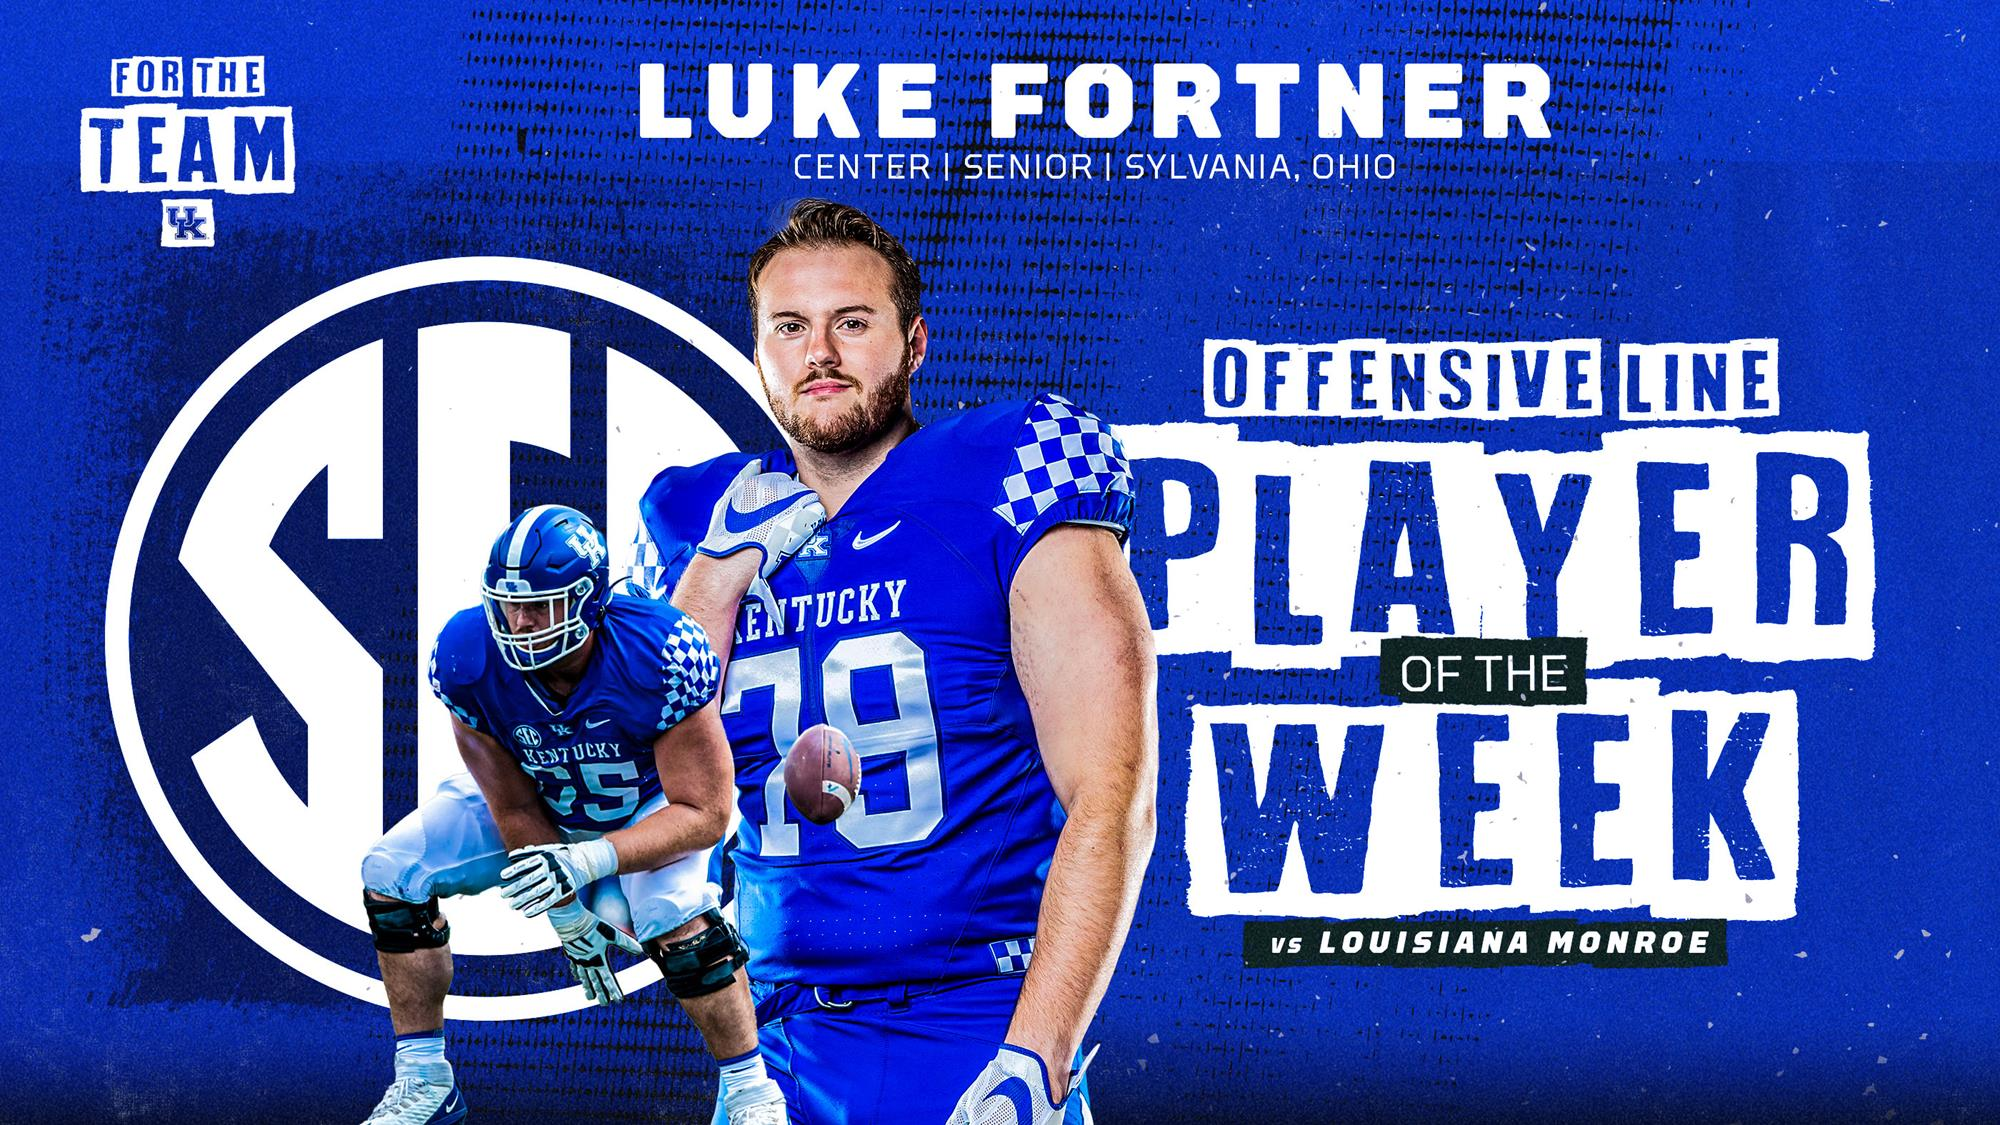 Luke Fortner Named SEC Co-Offensive Lineman of the Week